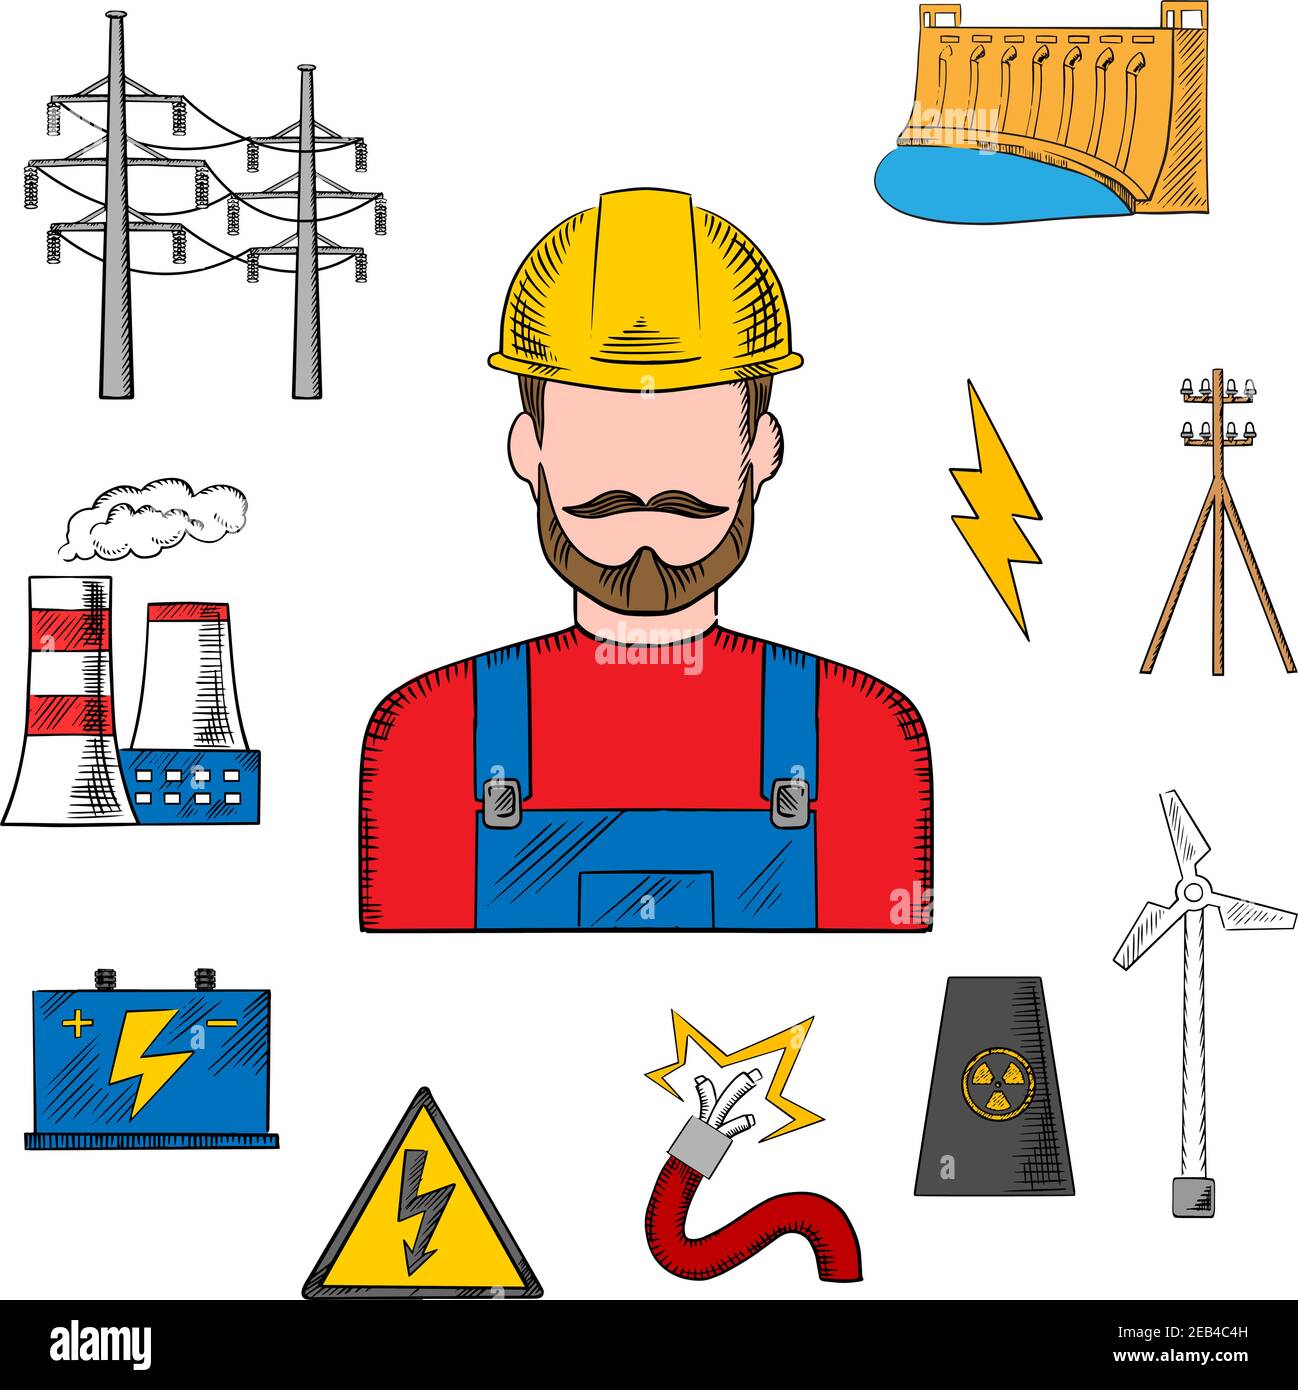 Stromenergieindustrie Skizze mit Kraftwerk, Wasser- und Windenergie, Kernkraftwerk, Stromleitungen und Pylon, Batterie und Gefahrenwarnung Stock Vektor